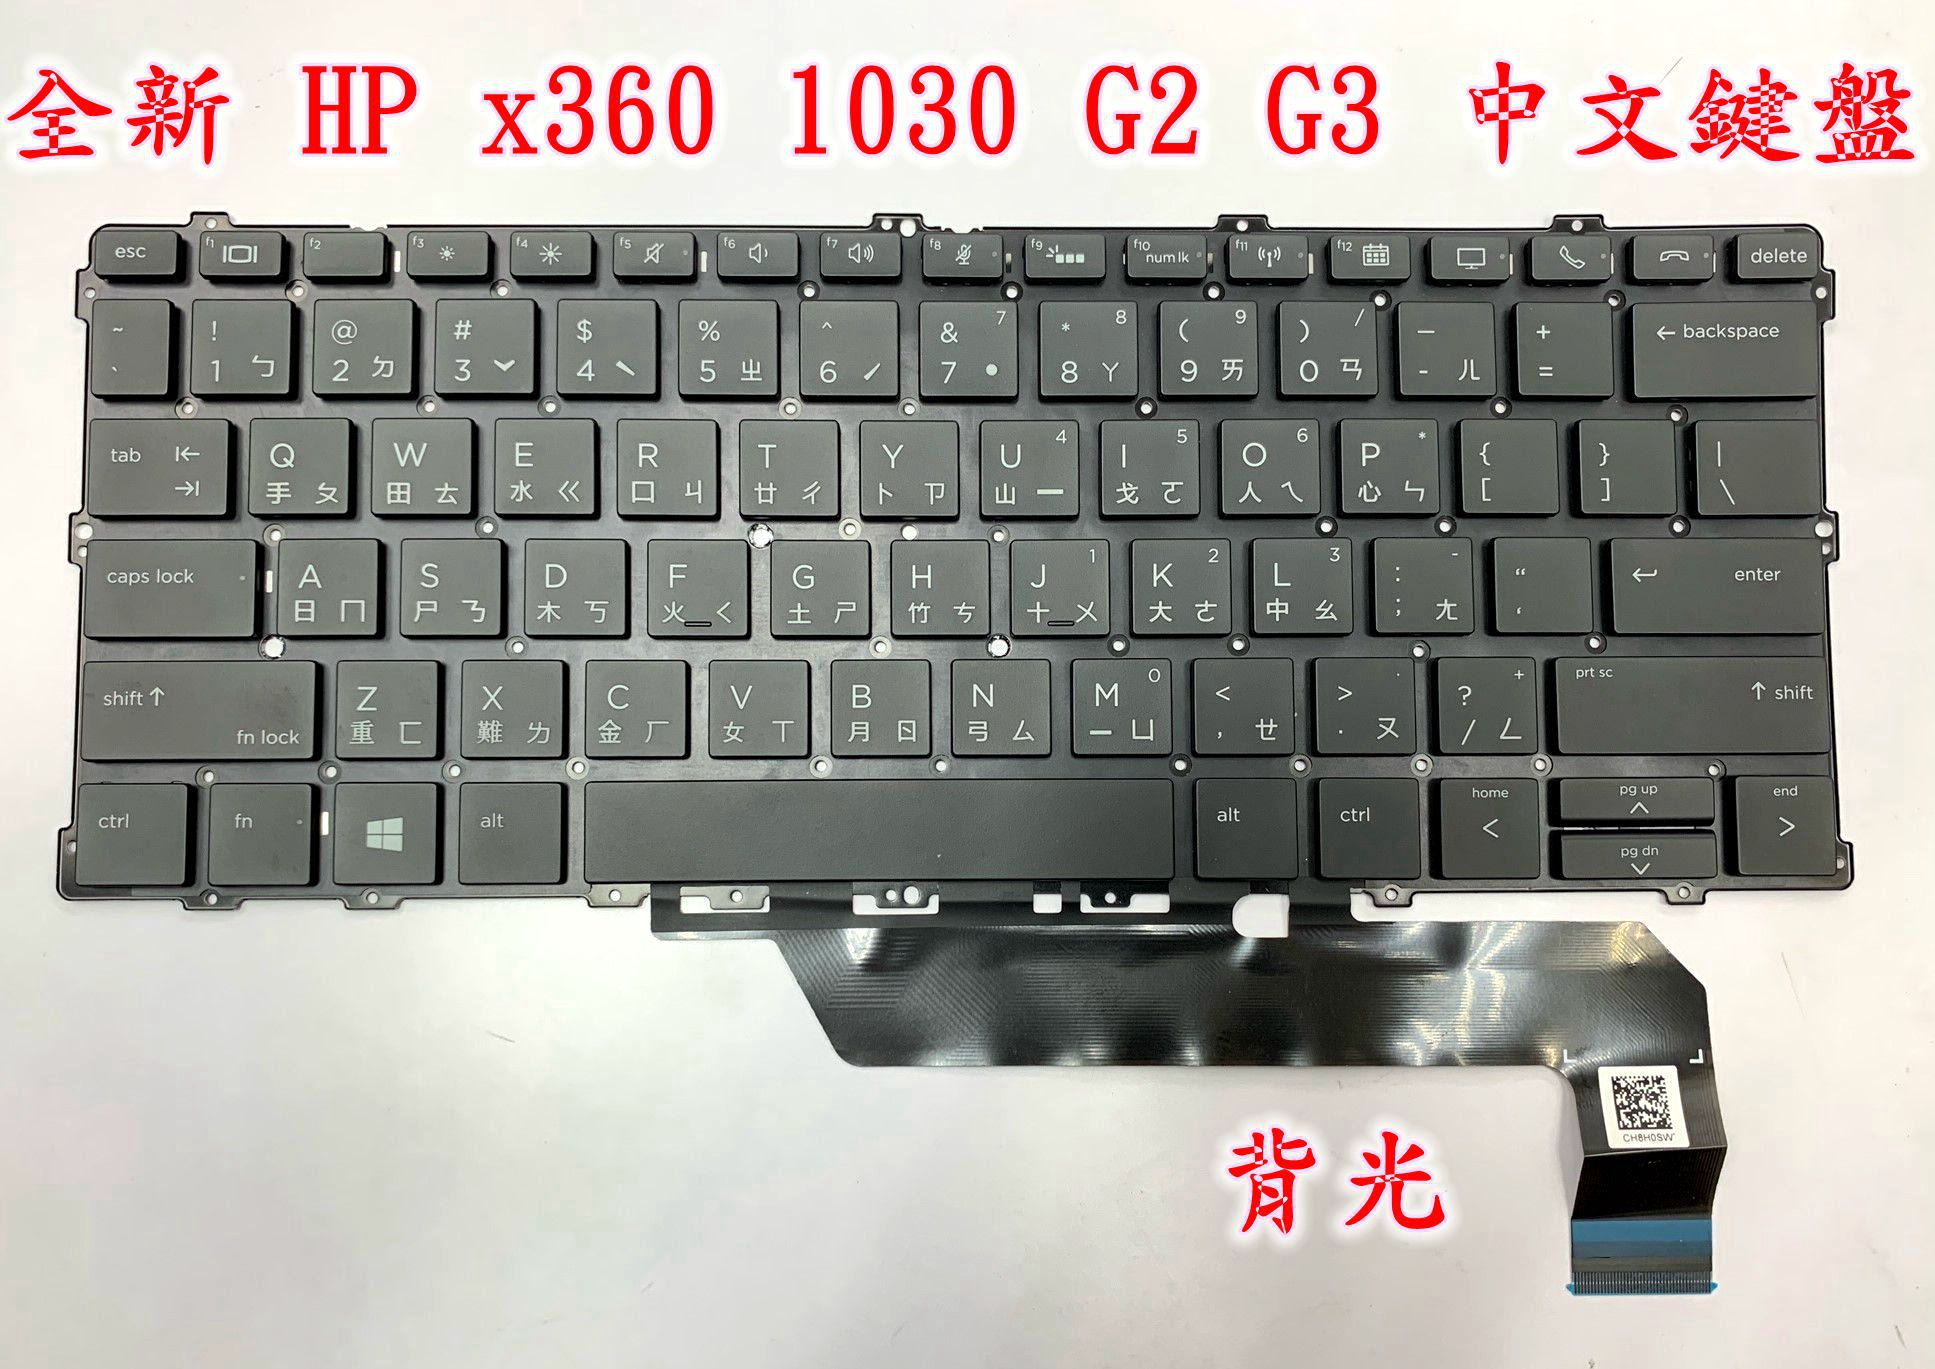 ☆【全新HP EliteBook x360 1030 G2 1030 G3 惠普中文鍵盤】☆背光